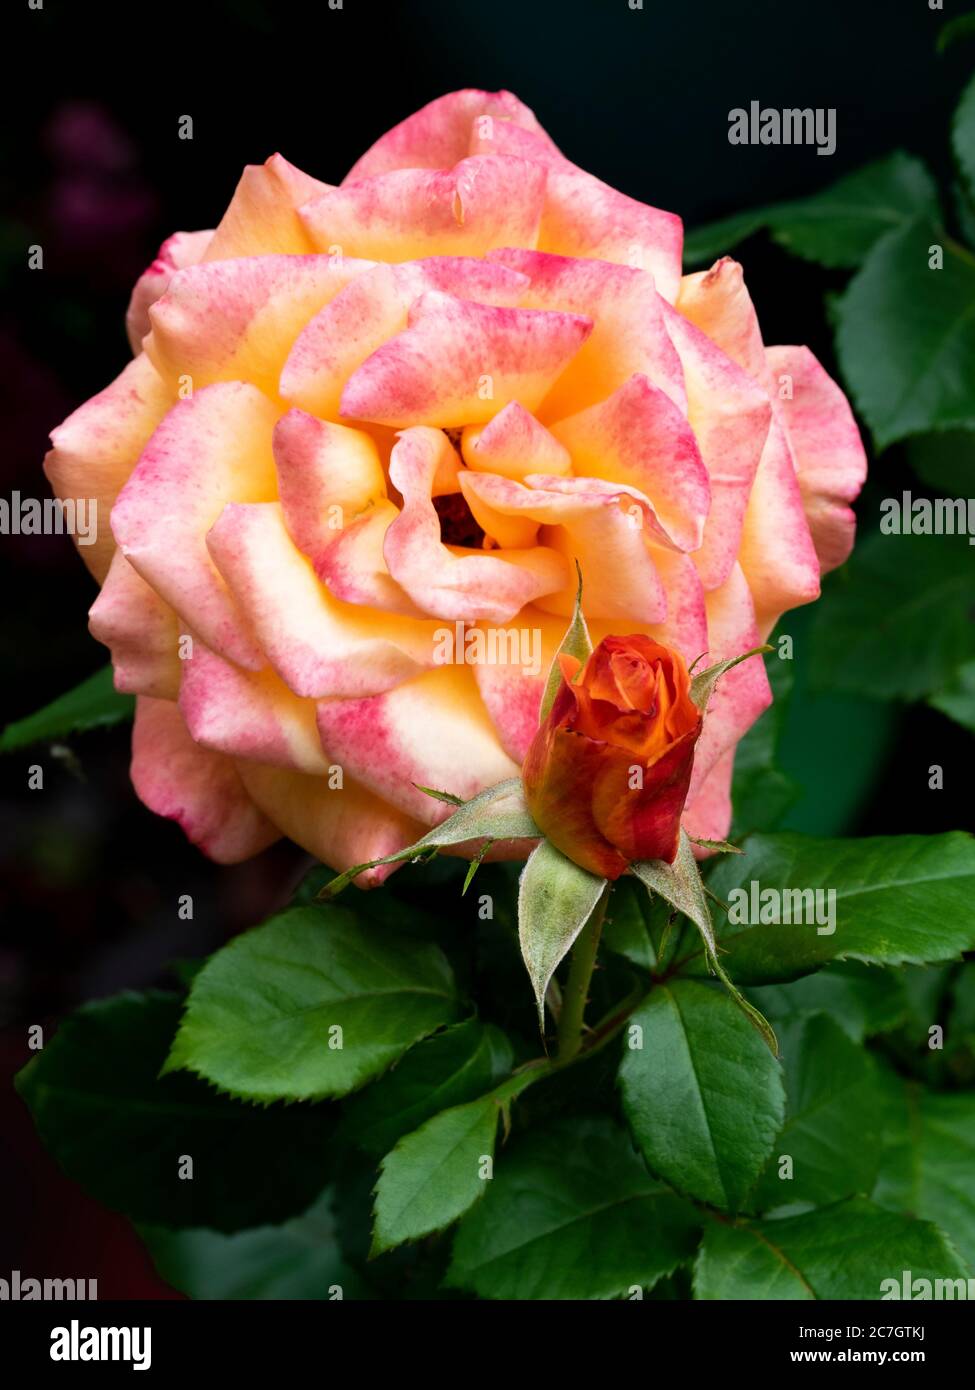 Rose and rosebud, UK July, Stock Photo